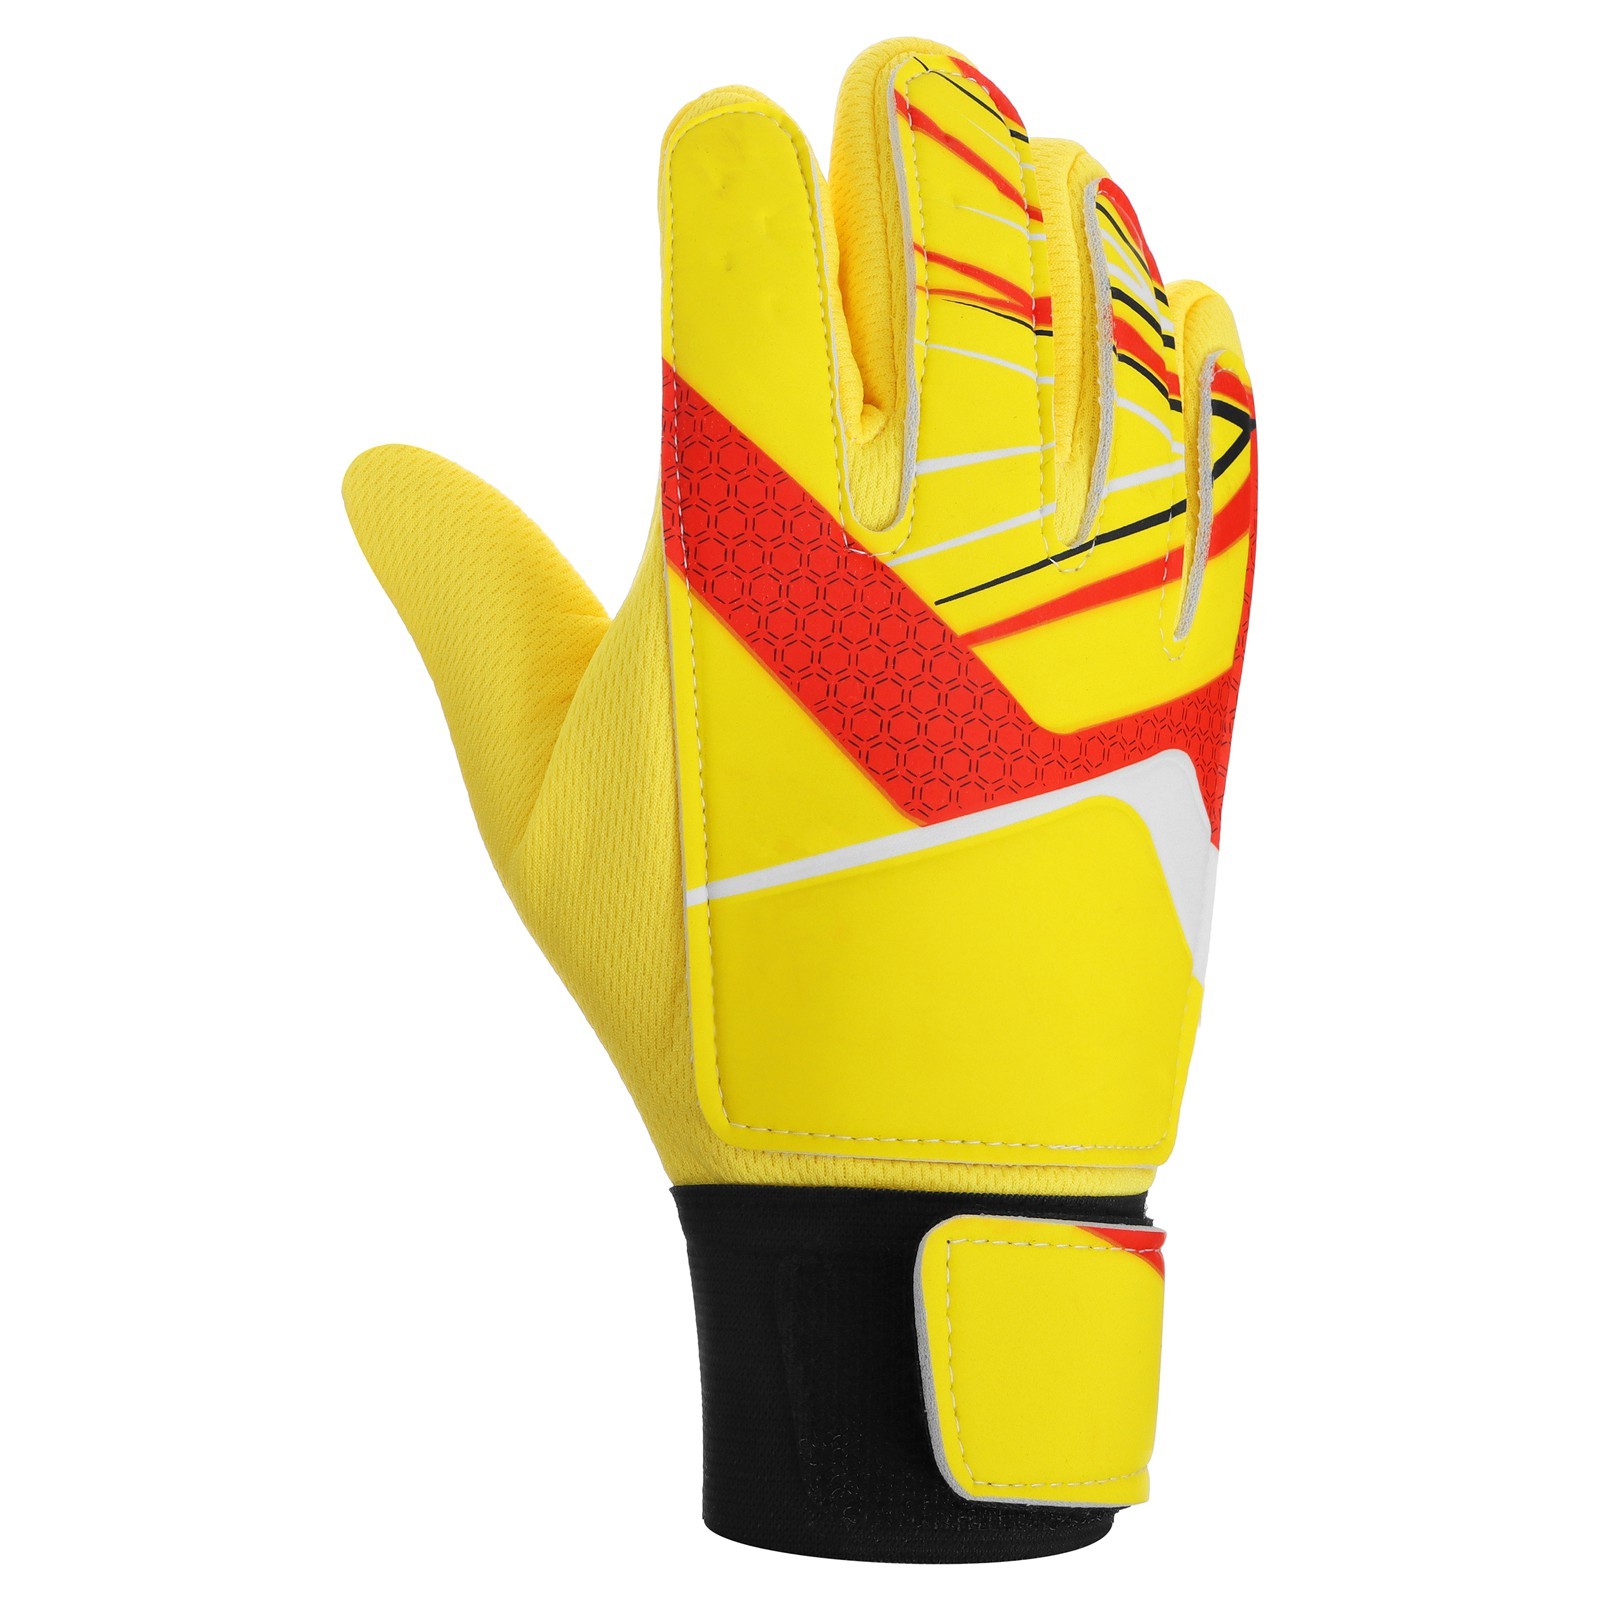 Вратарские перчатки ONLYTOP 3912371, размер 6, цвет желтый